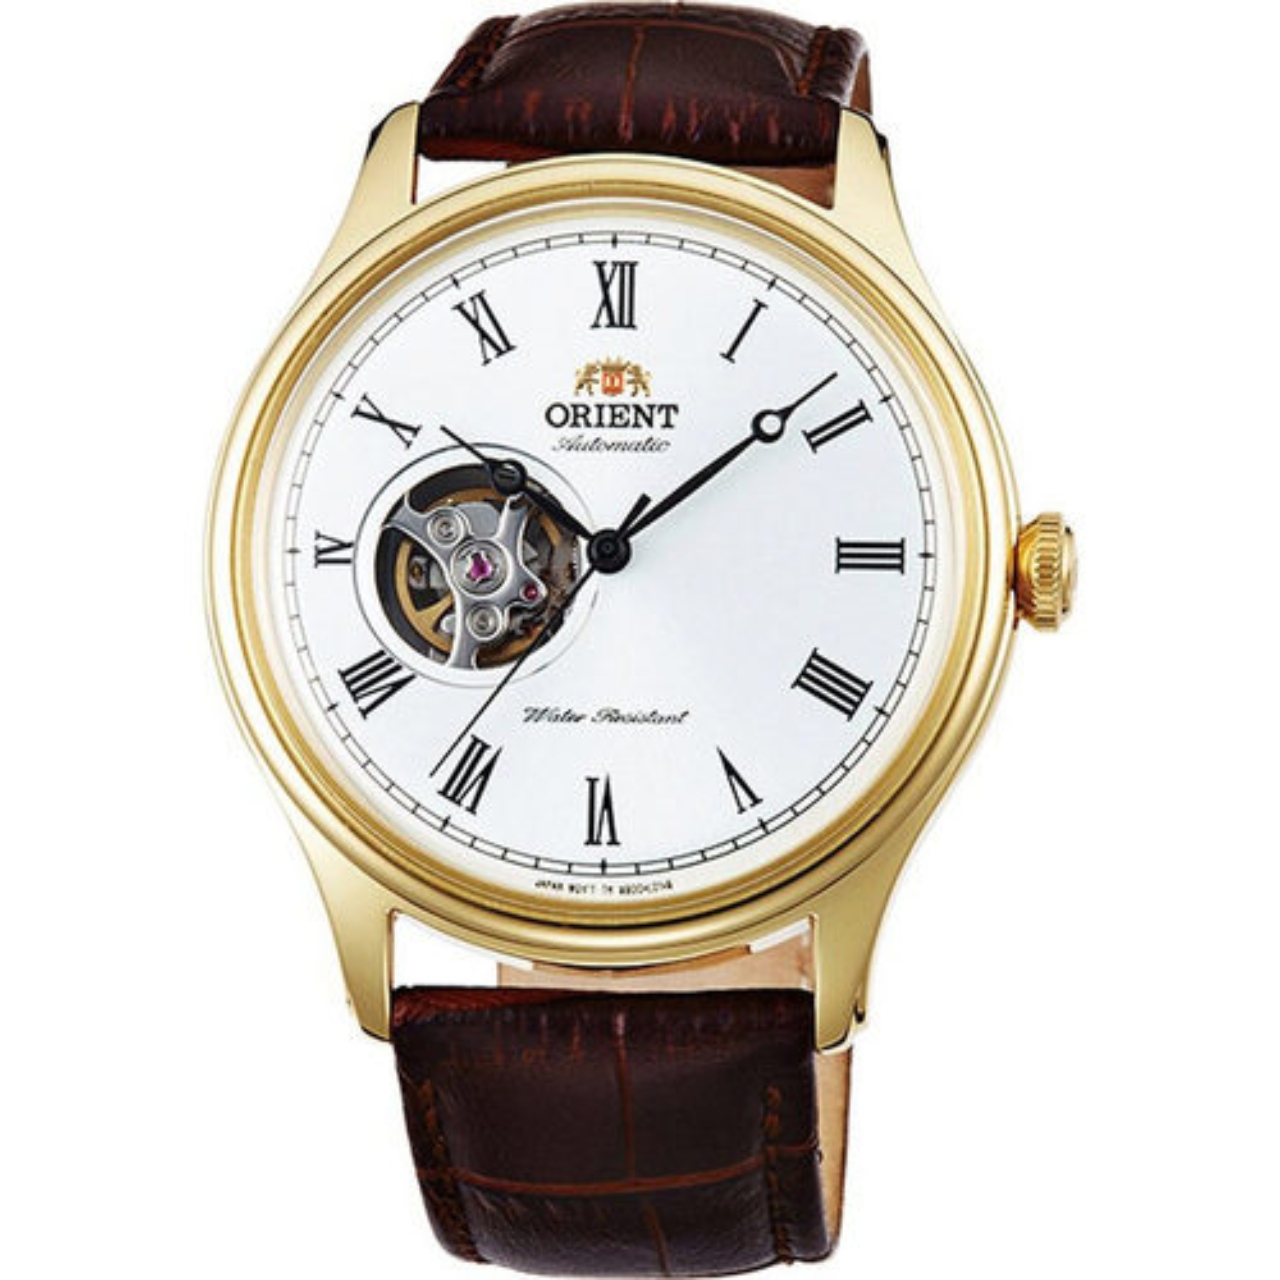 Correa reloj-Cuero auténtico-Modelo Business-dorado- 8-22 mm